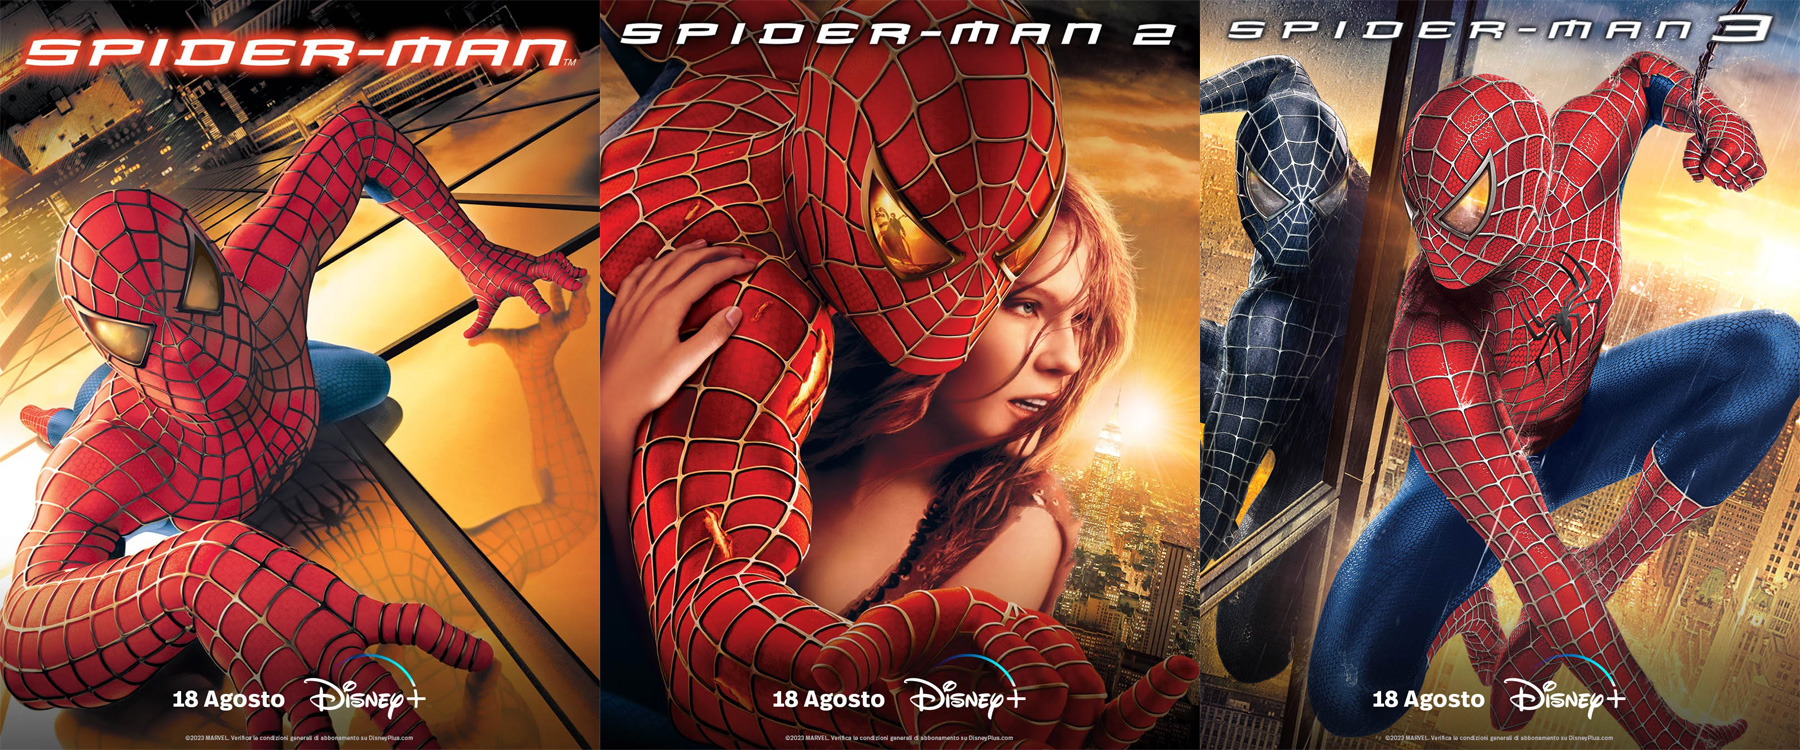 Spider-Man, trilogia con Tobey Maguire su Disney+